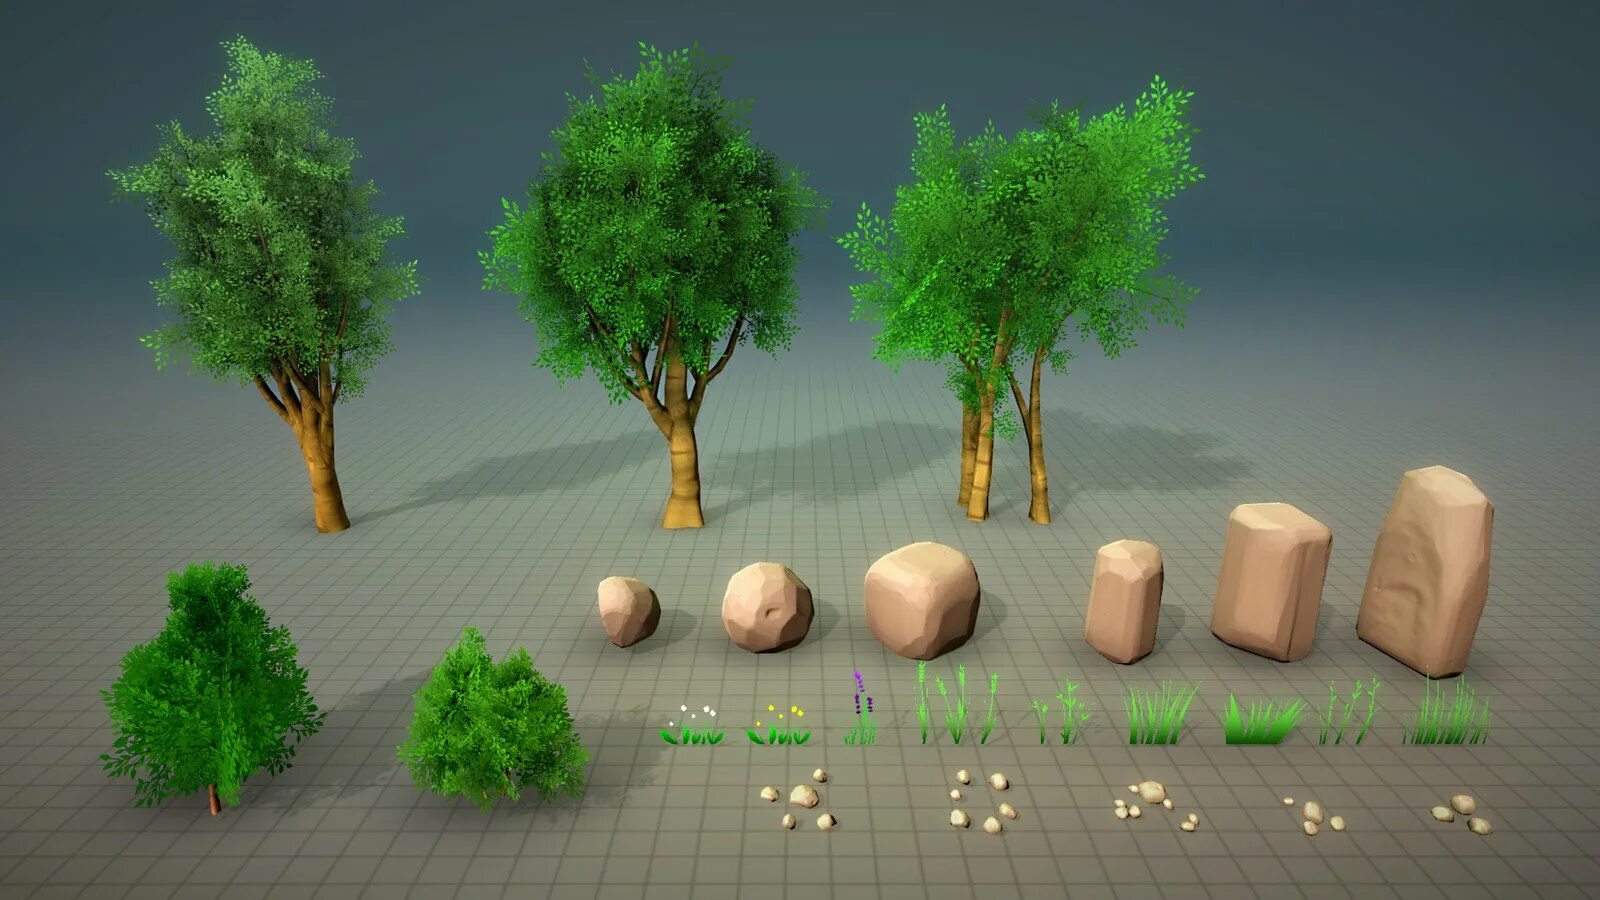 Imaging environment. Шейдер травы Blender. Гриб в Blender. 3д модели природы. Трава в Blender 2.8.